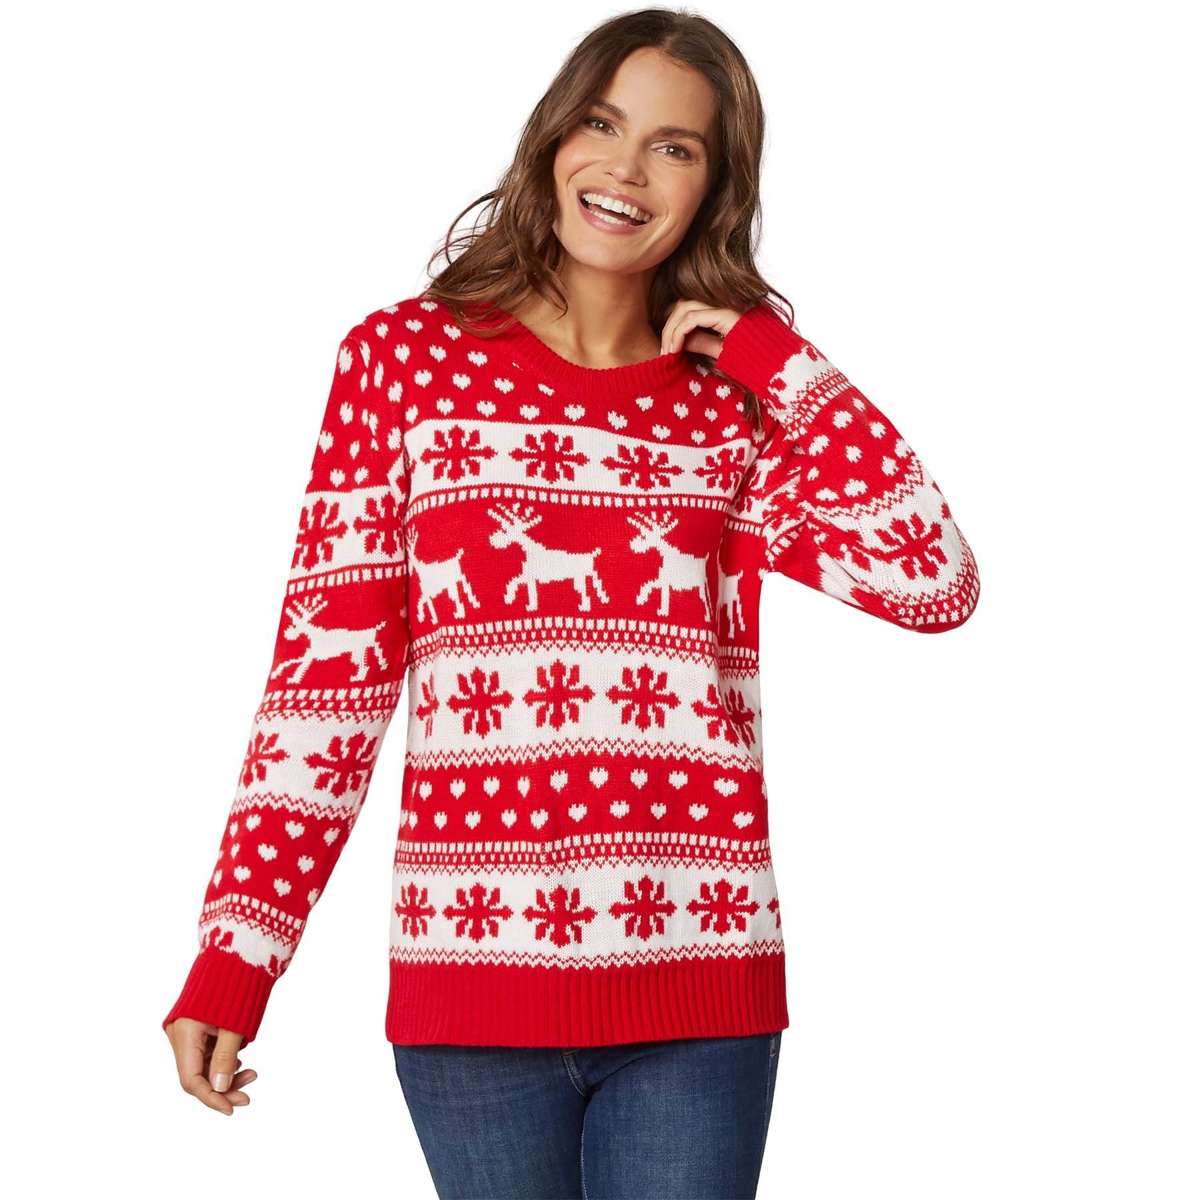 Рождественский свитер Рождественский свитер зимний волшебный красный и белый для